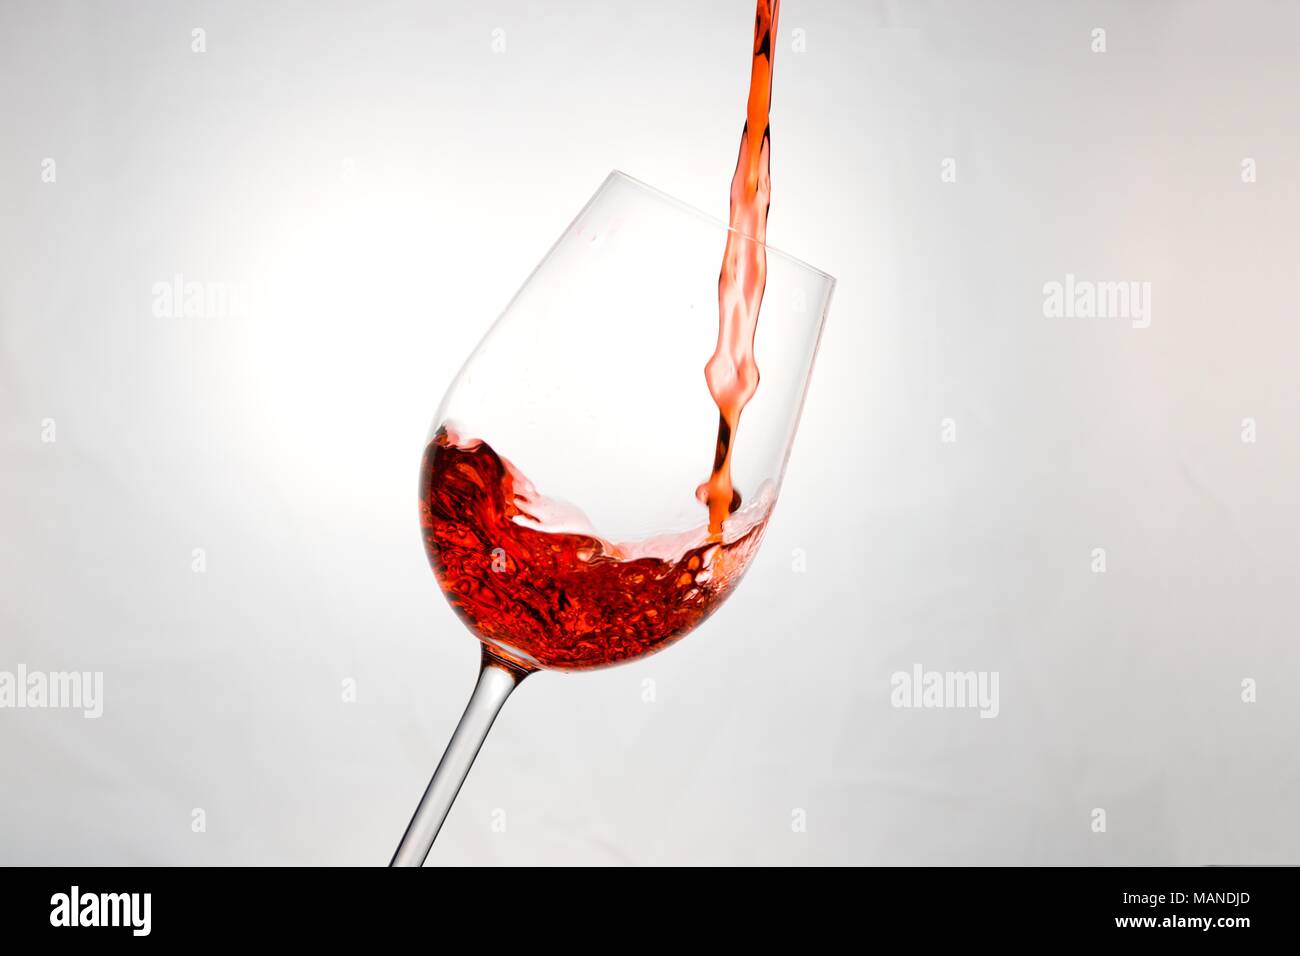 Rosso brillante liquido come il vino rosso, succo di fragola o qualcosa di simile, che viene versato in un bicchiere Foto Stock